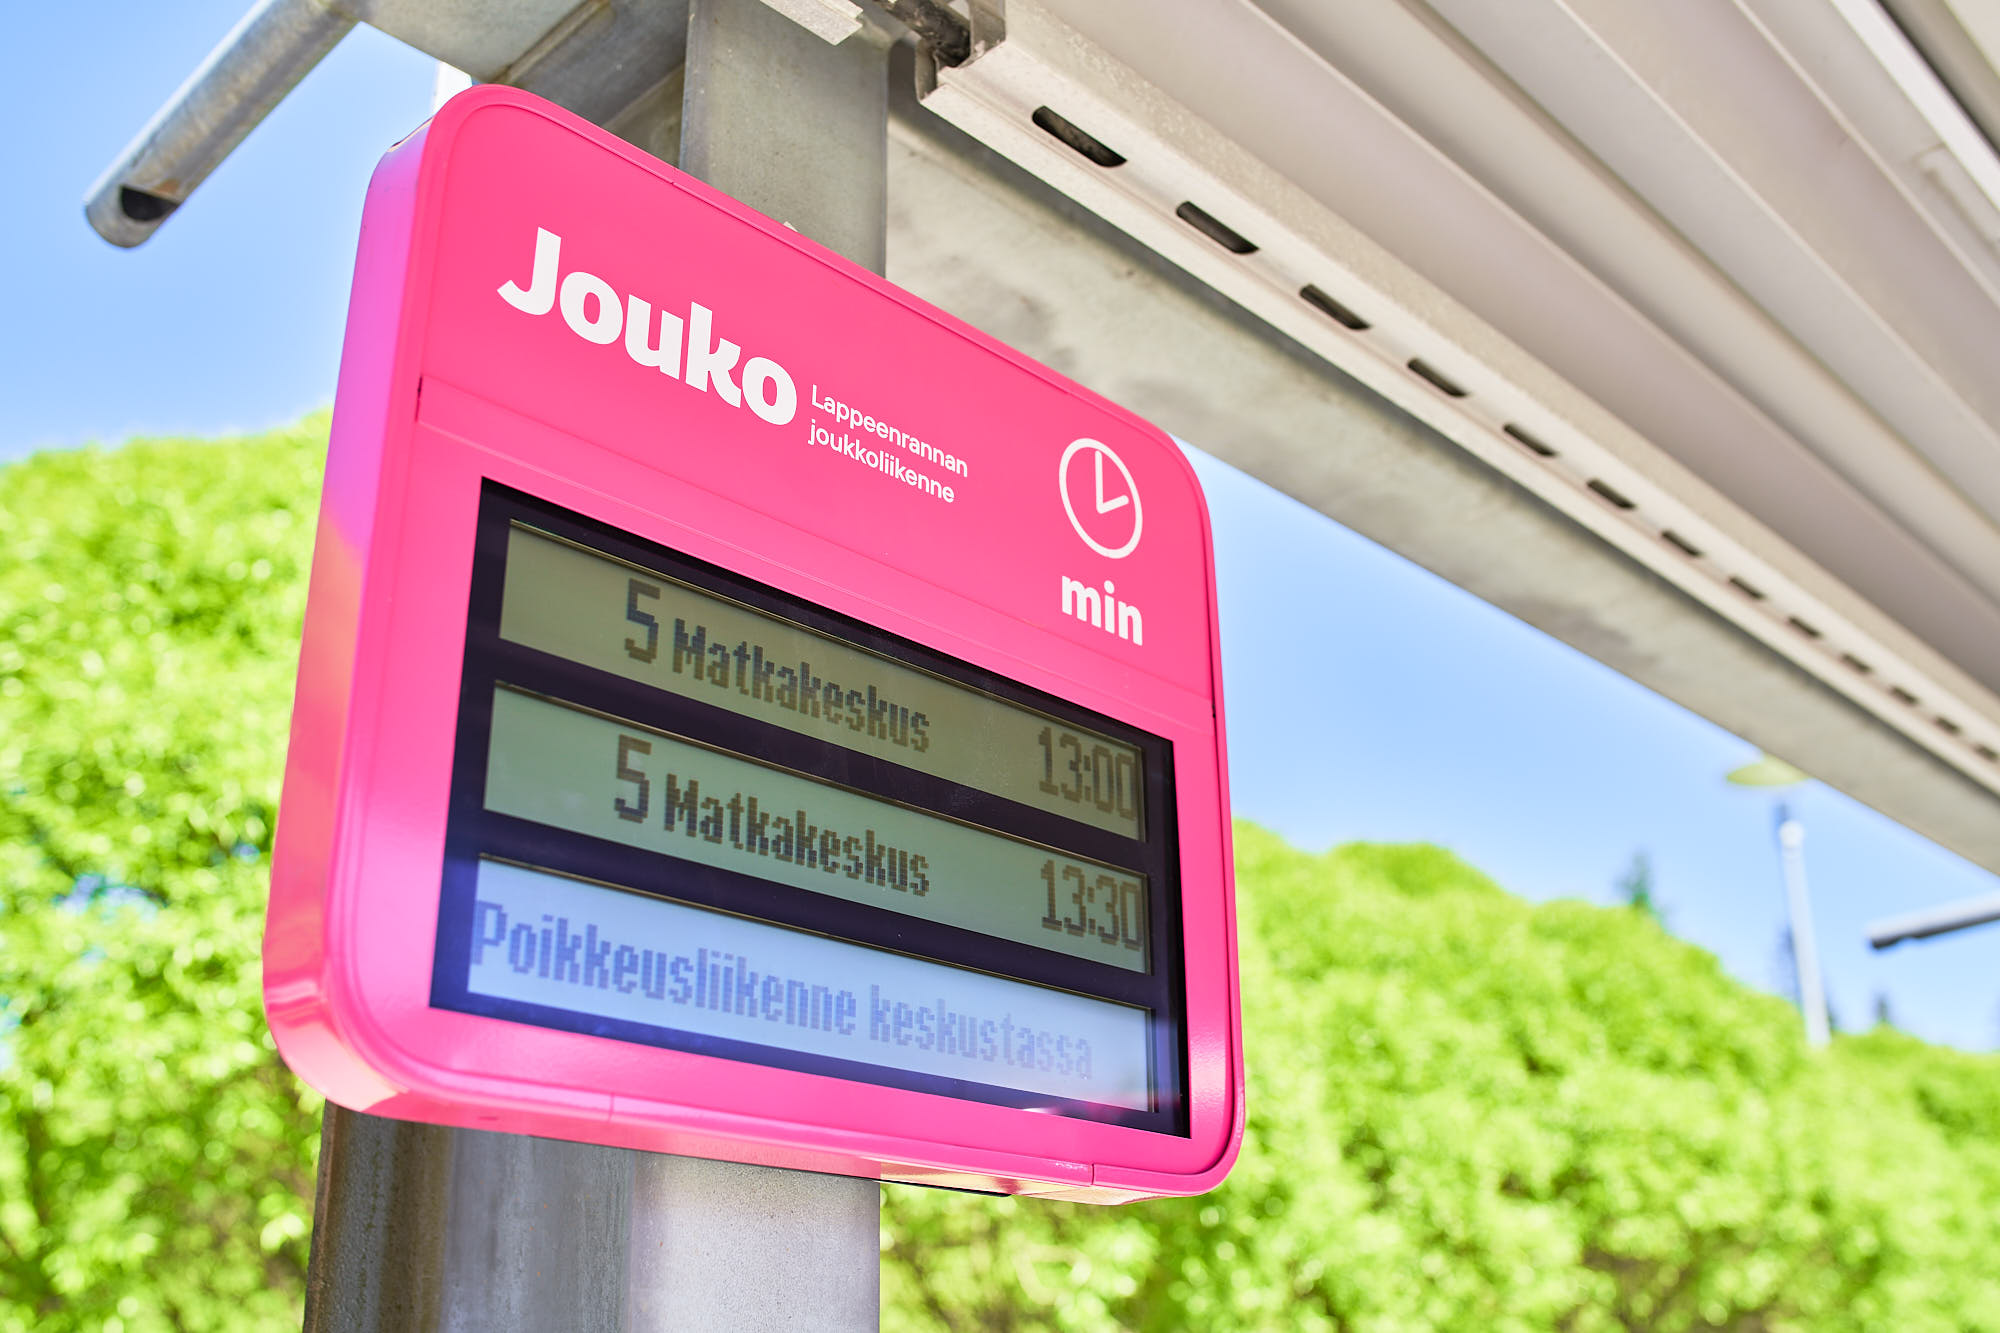 Pinkki Jouko-joukkoliikenteen sähköinen opastekyltti bussipysäkillä, ruudussa teksti ”5 Matkakeskus 13:00 ja 13:30, poikkeusliikenne keskustassa”.